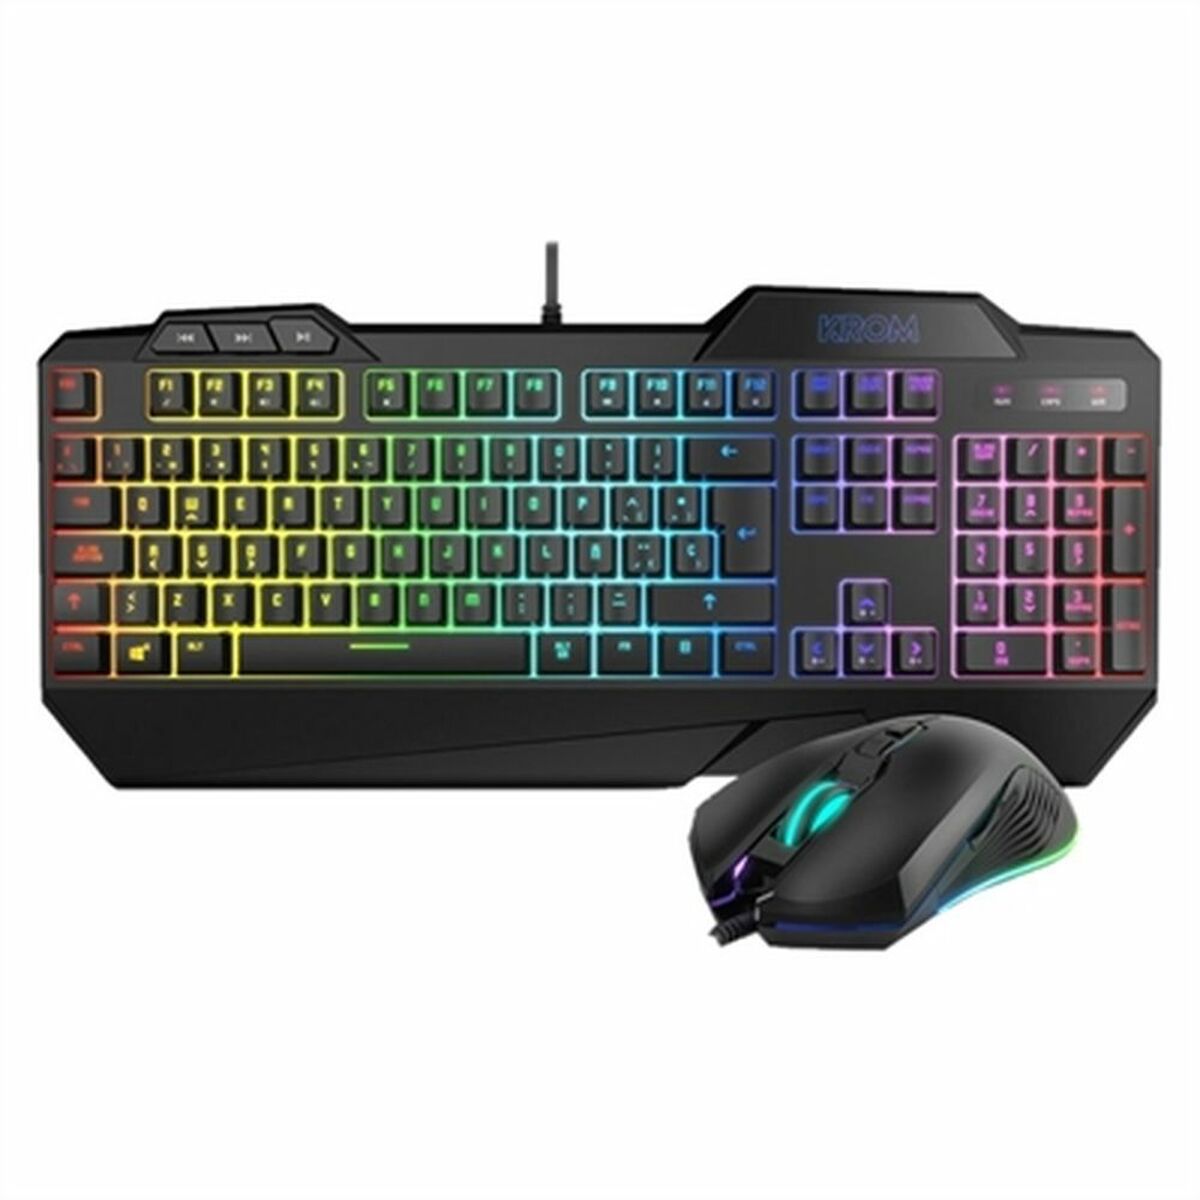 Tastatur und Gaming Maus Krom Krusher RGB Schwarz - CA International 